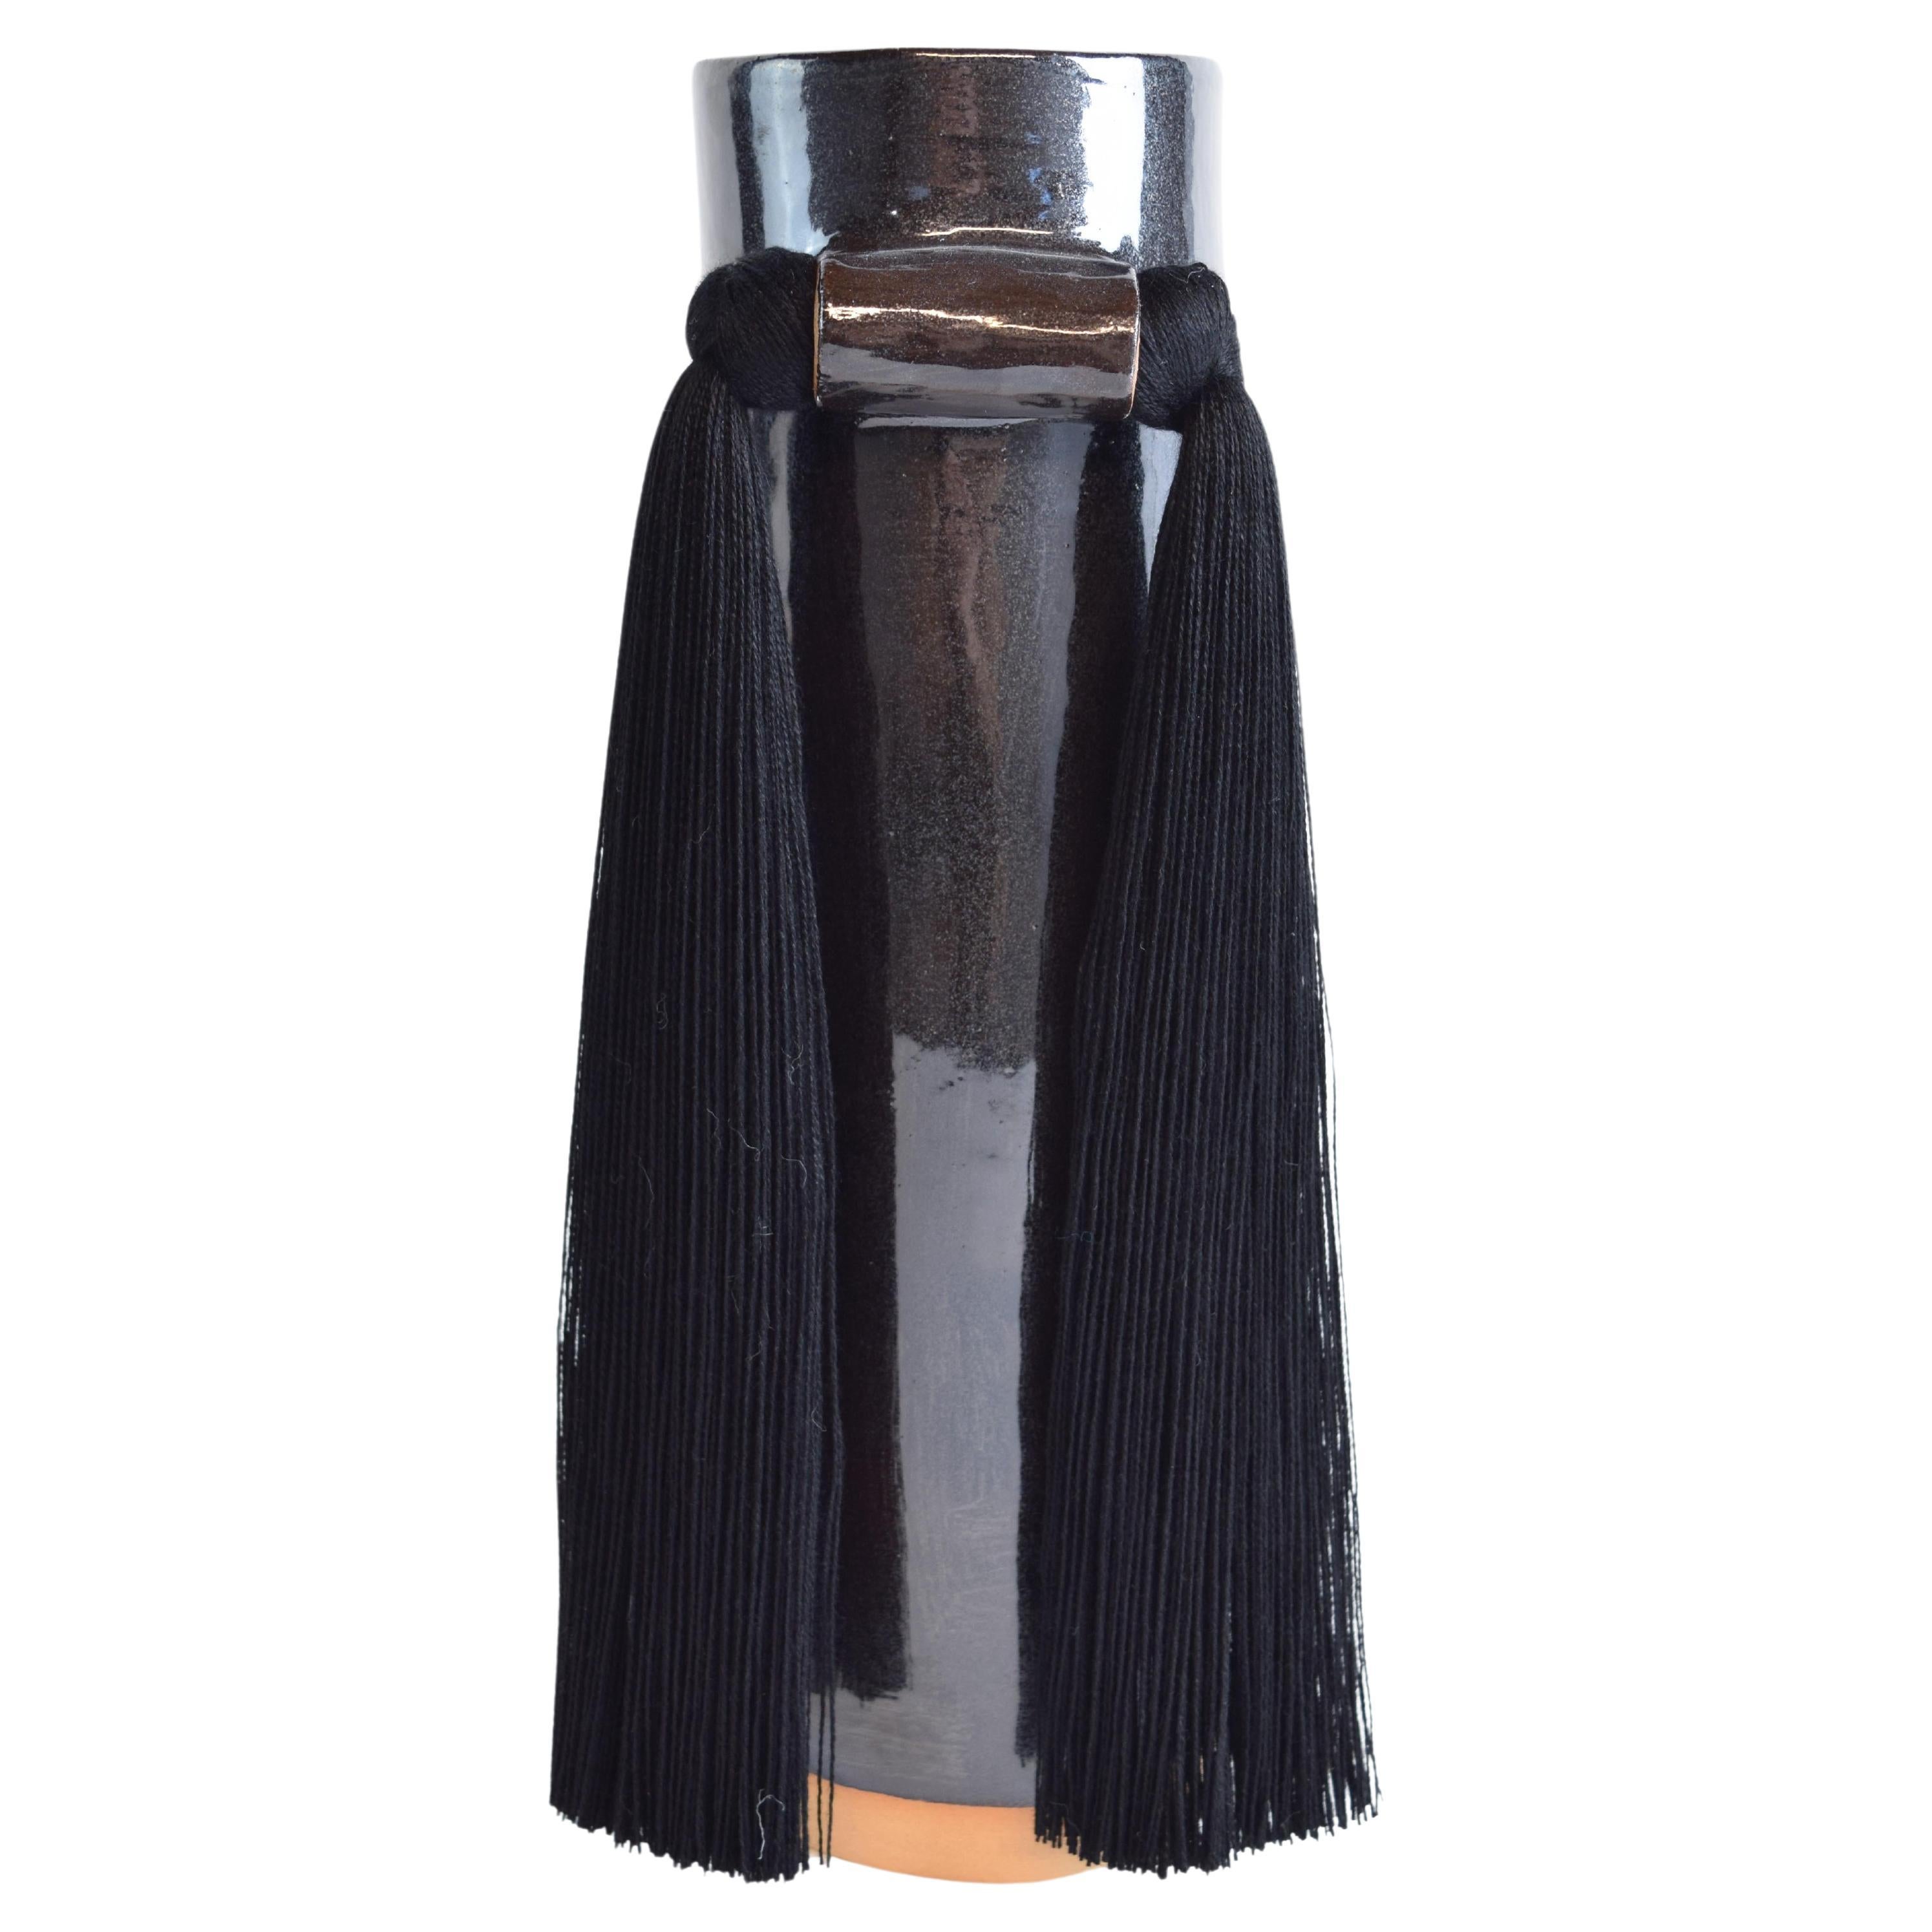 Handmade Ceramic Vase #531 in Black Glaze with Black Tencel Fringe